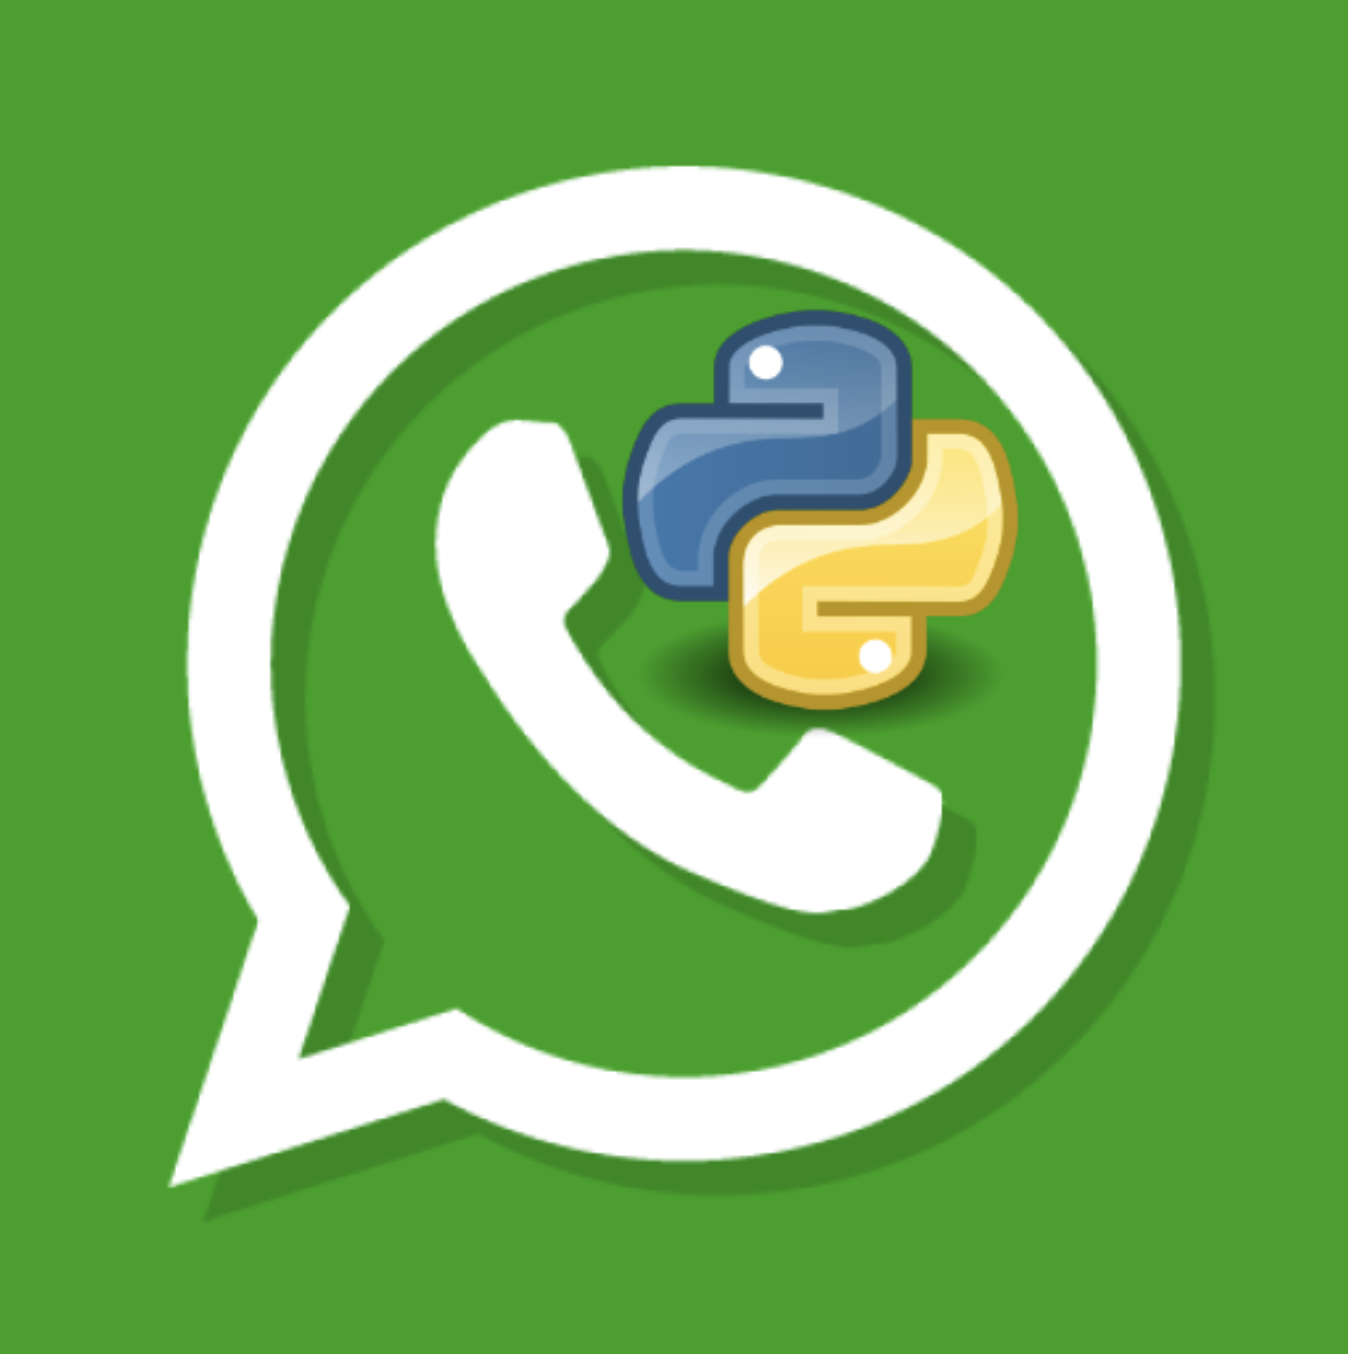 WhatsApp and Python